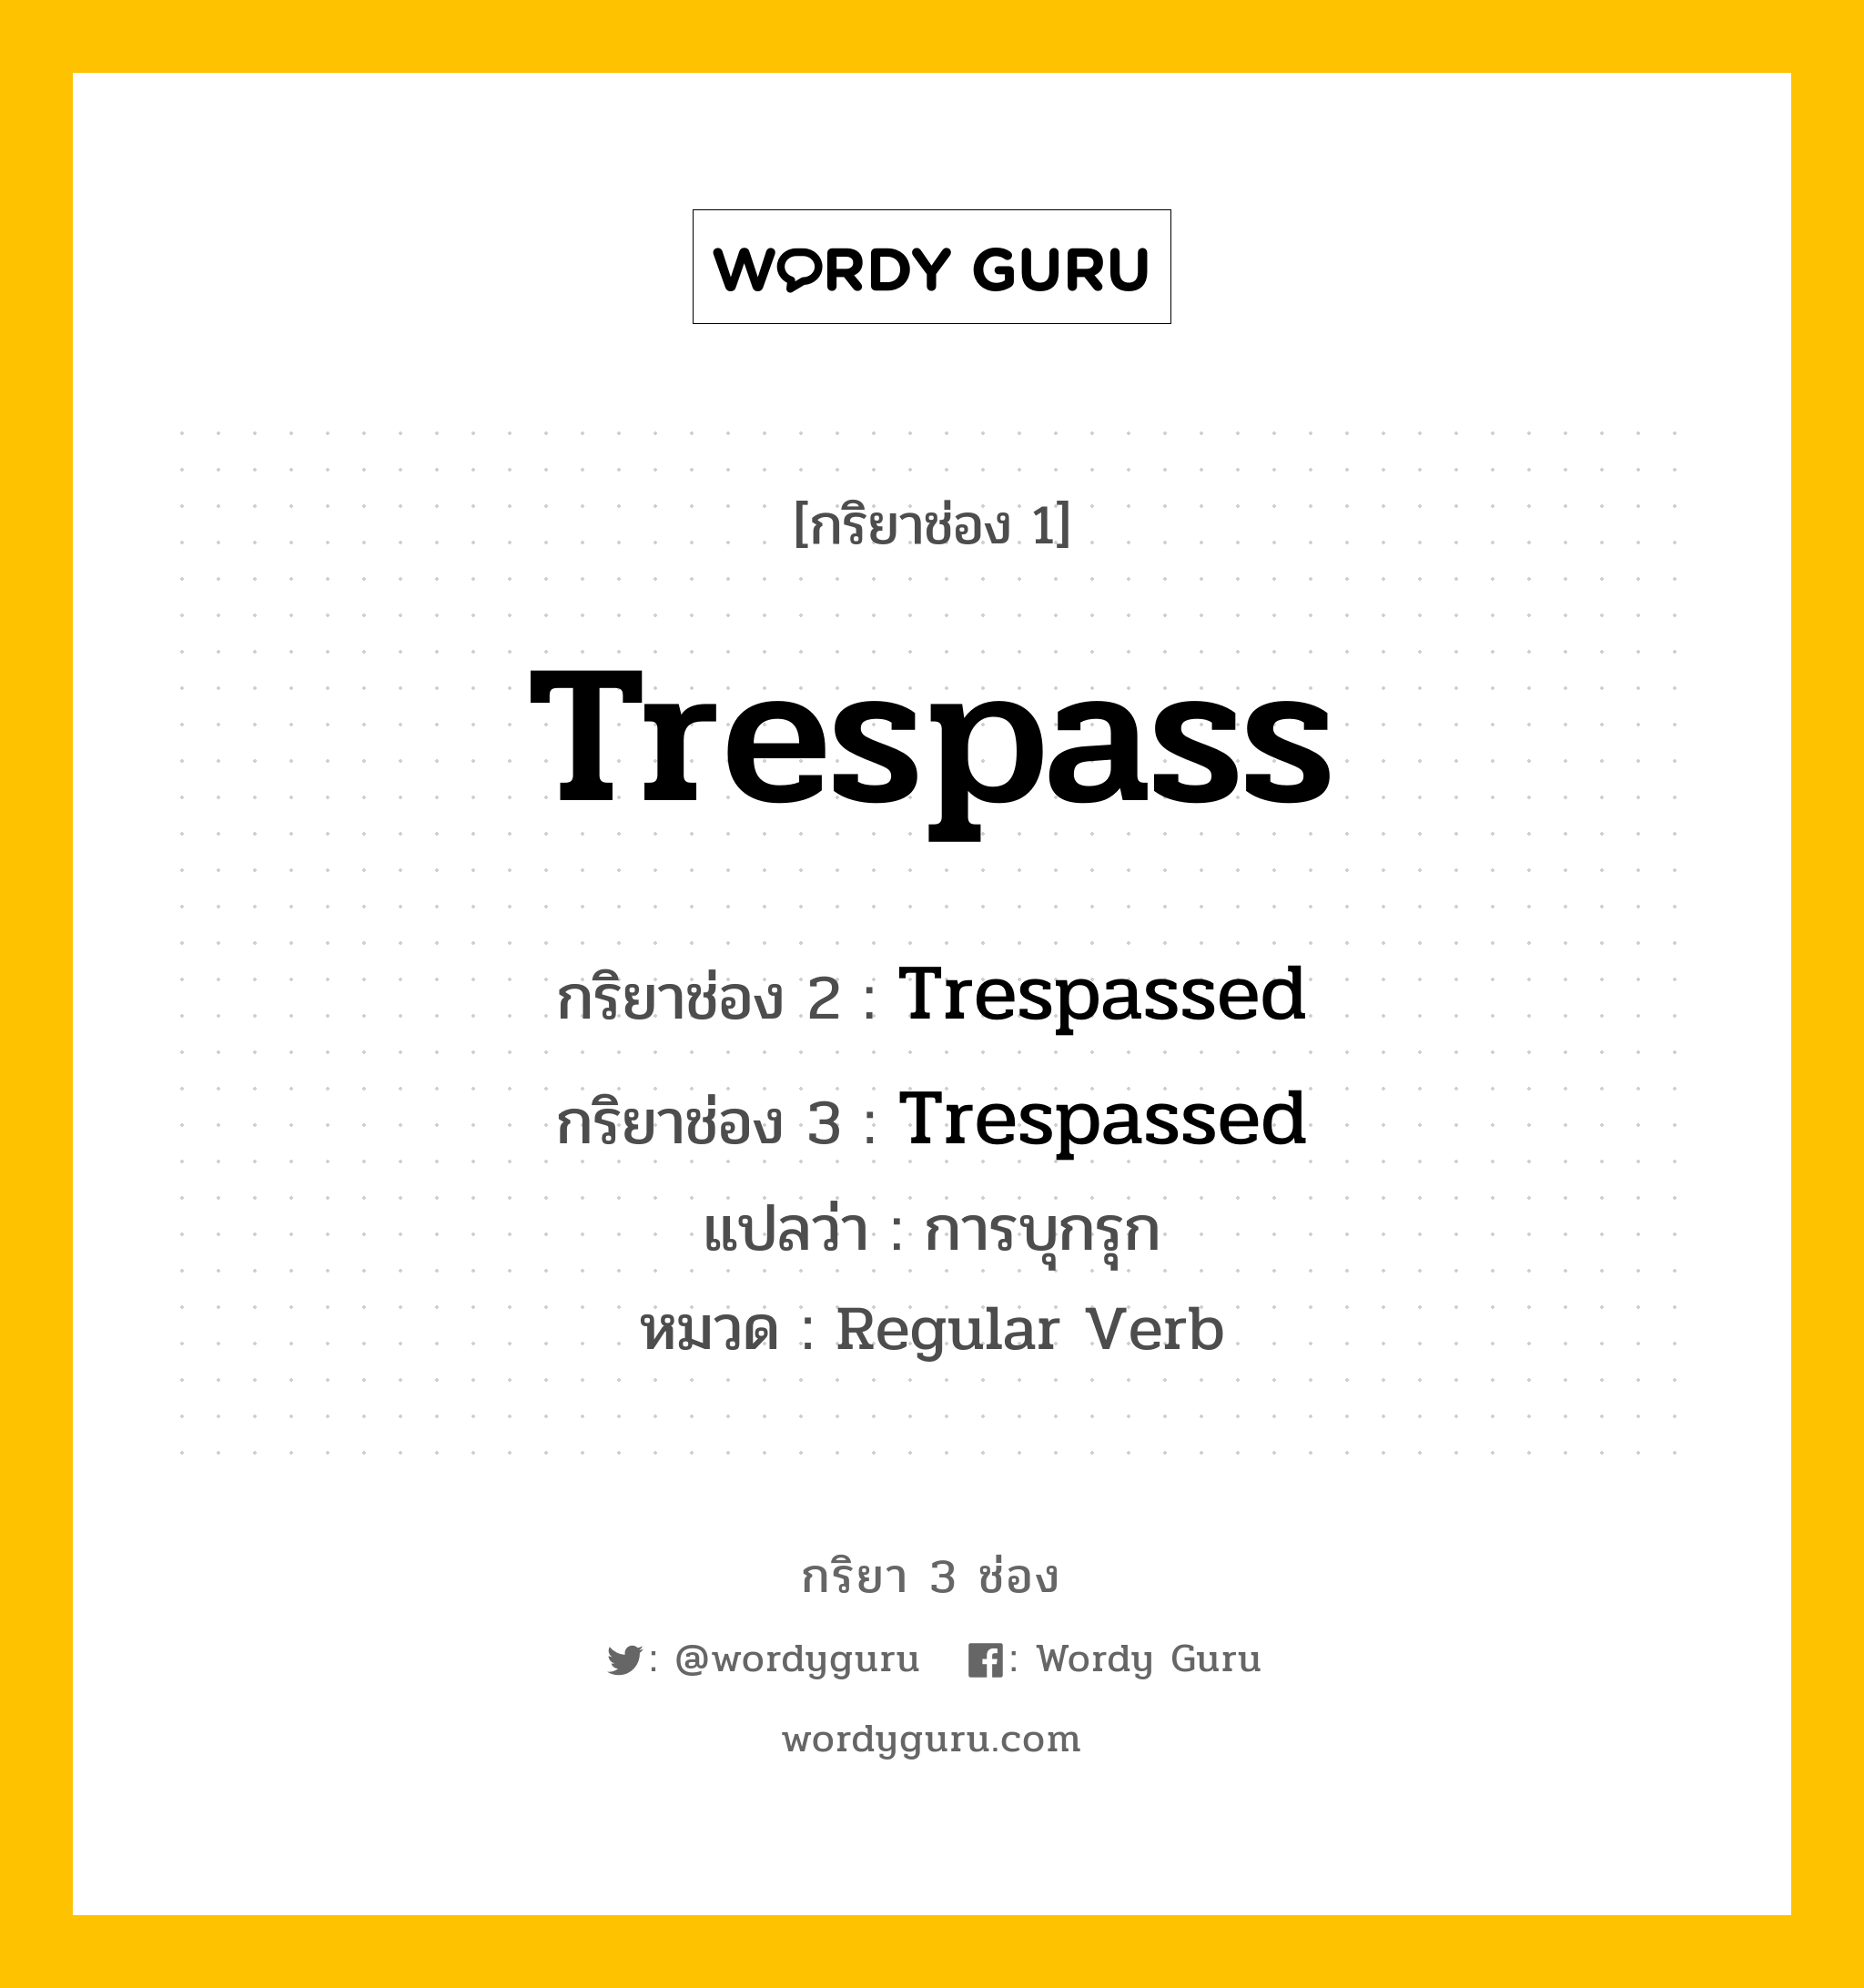 กริยา 3 ช่อง ของ Trespass คืออะไร? มาดูคำอ่าน คำแปลกันเลย, กริยาช่อง 1 Trespass กริยาช่อง 2 Trespassed กริยาช่อง 3 Trespassed แปลว่า การบุกรุก หมวด Regular Verb หมวด Regular Verb